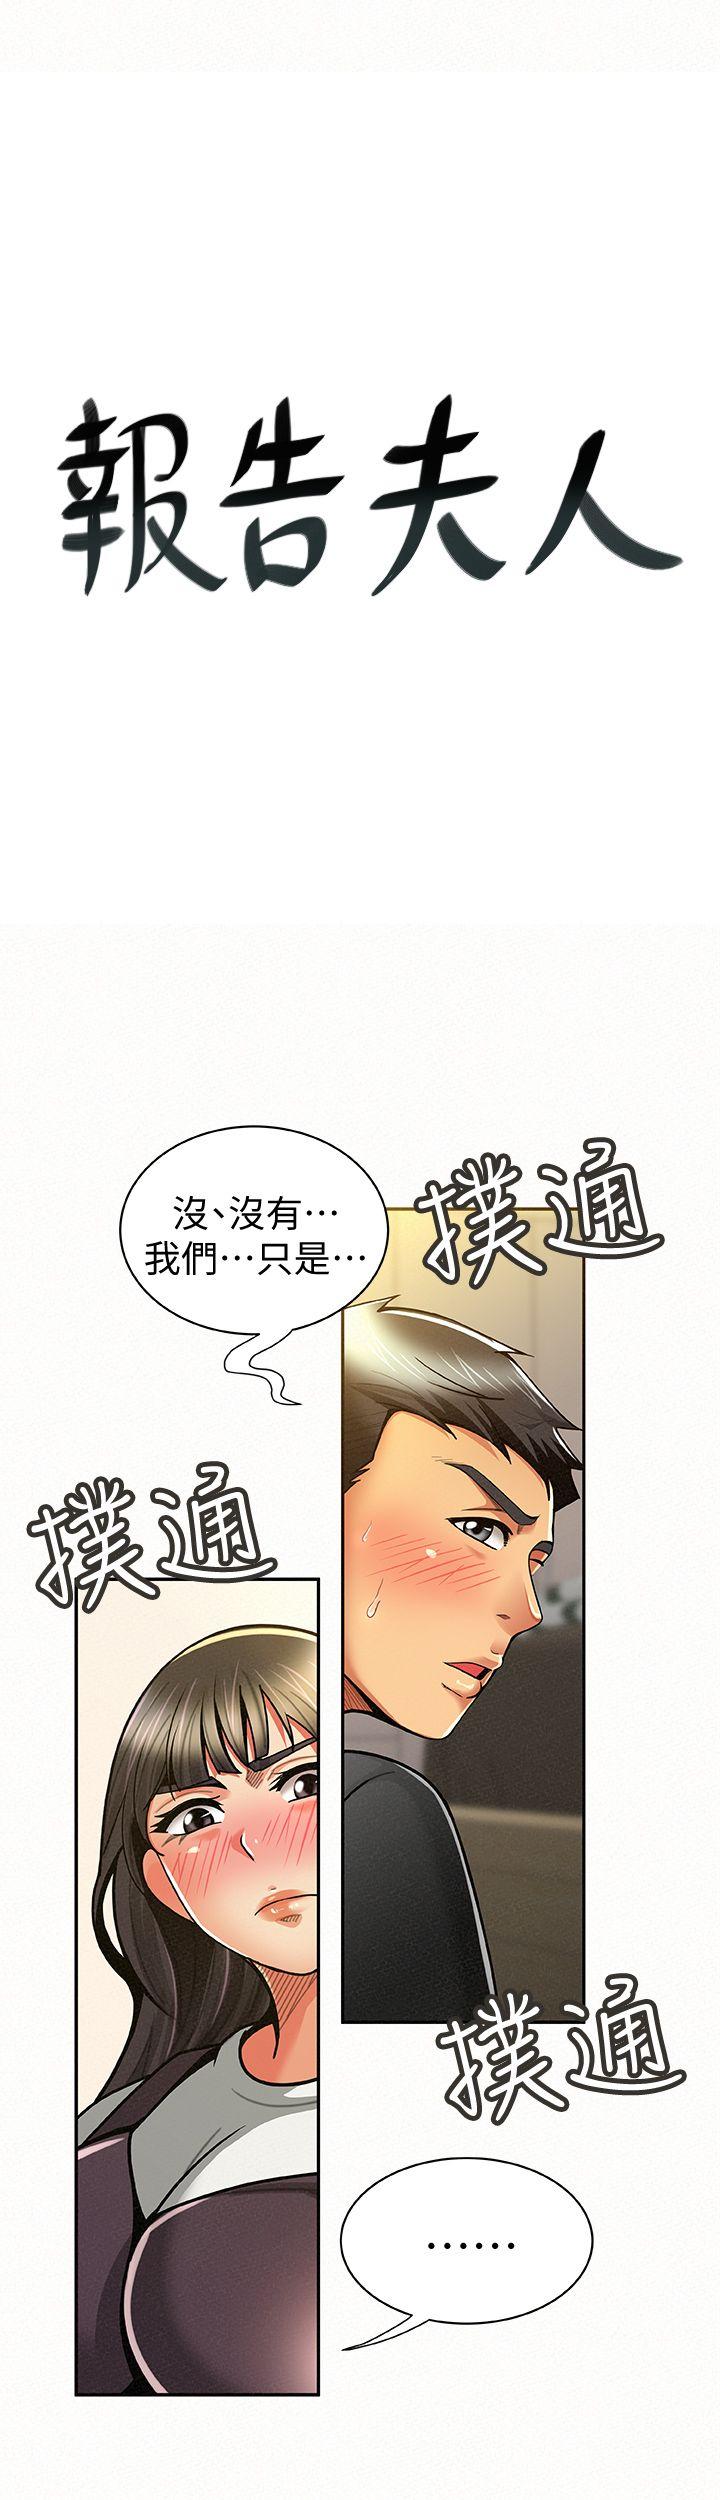 韩国污漫画 報告夫人 第11话-终于到手的诱惑机会 1